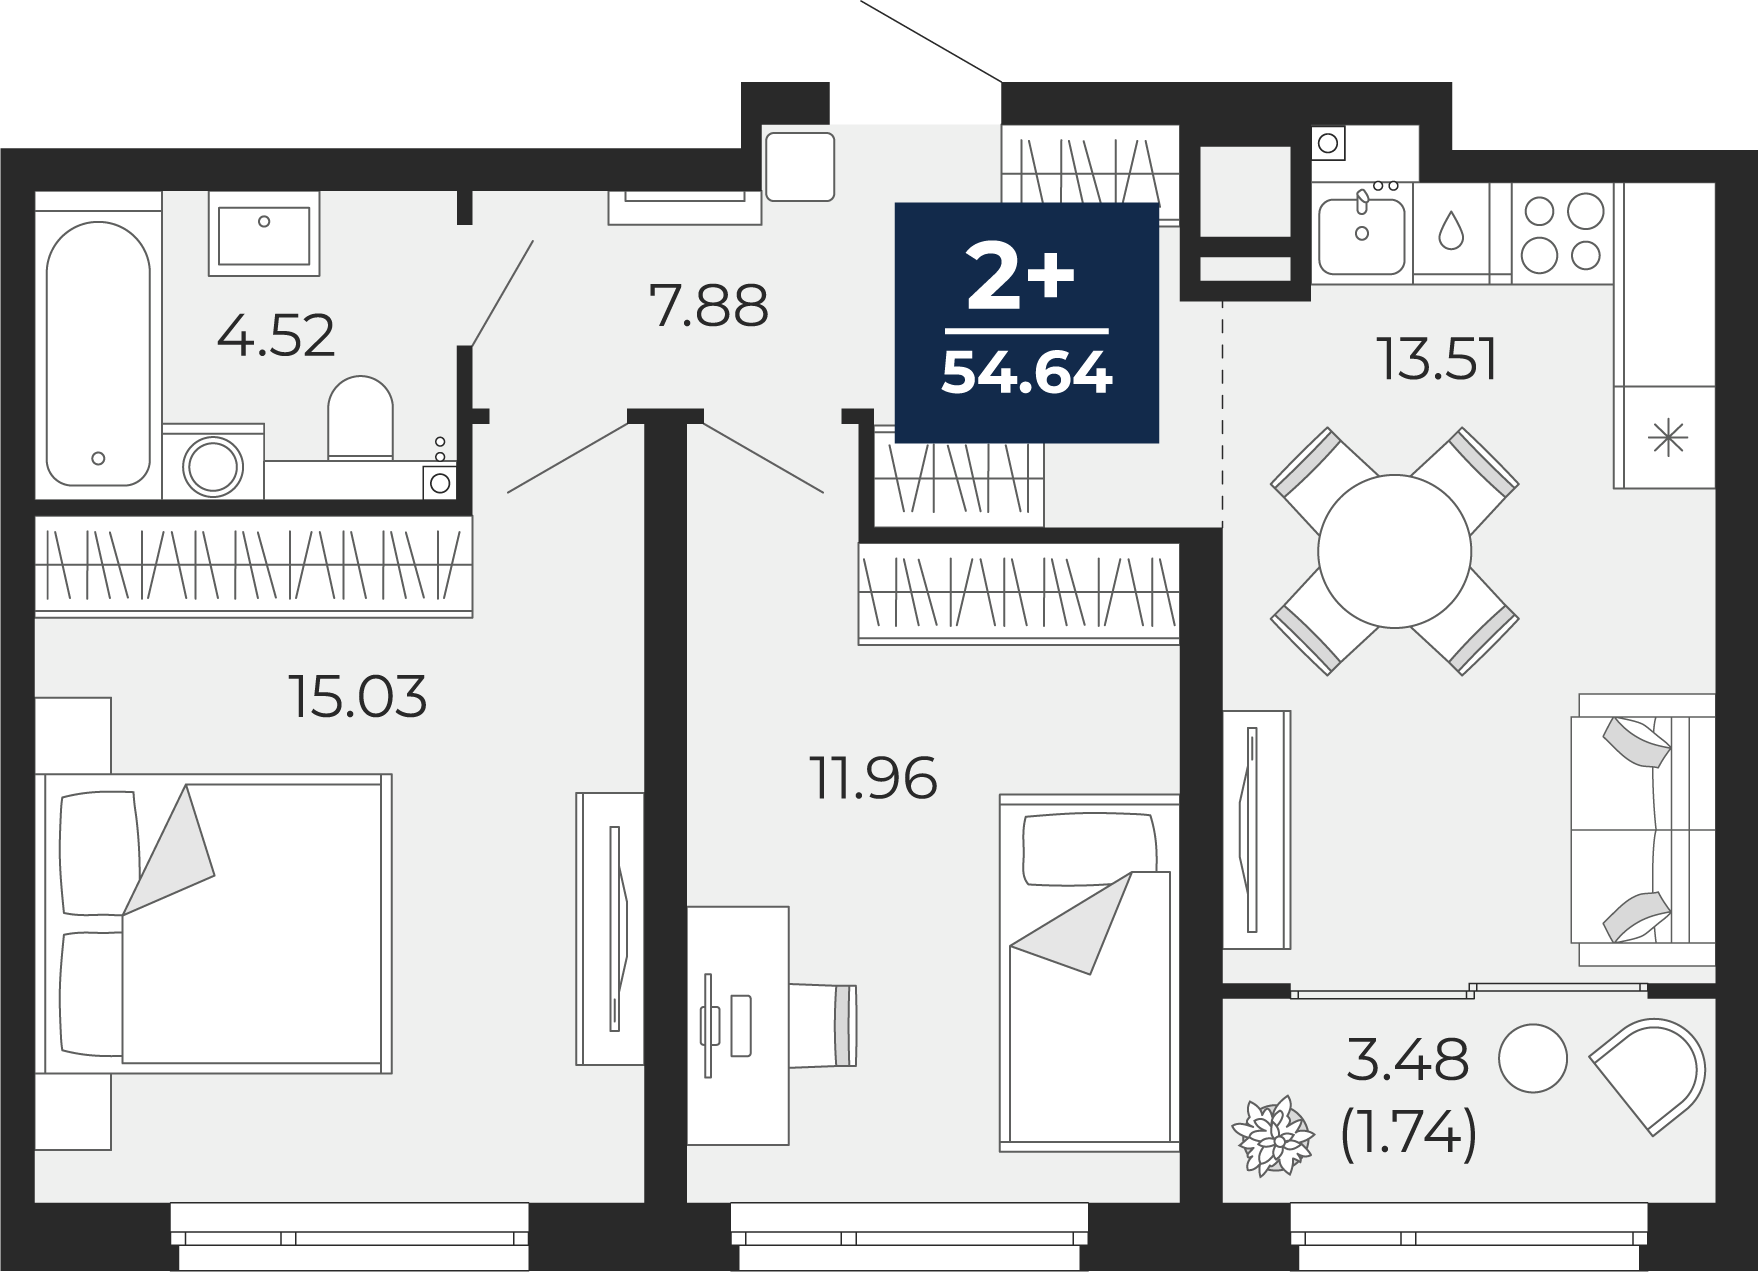 Квартира № 317, 2-комнатная, 54.64 кв. м, 21 этаж